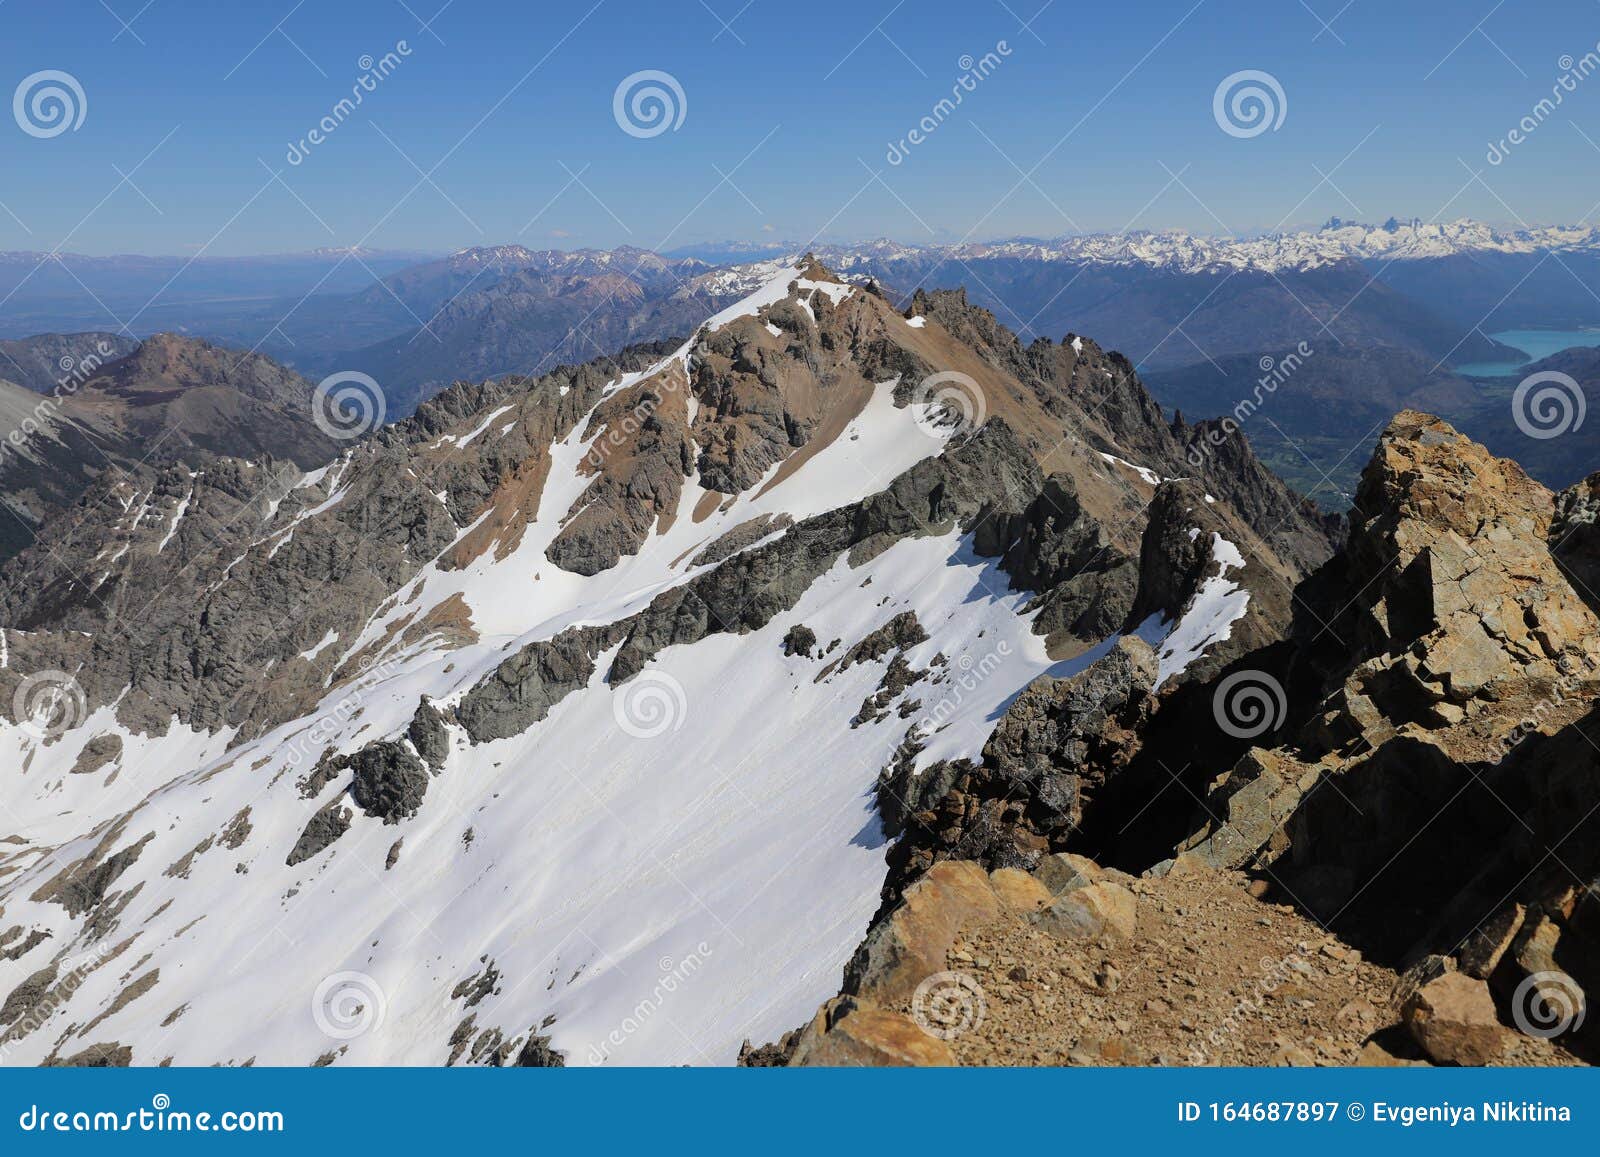 mountain landscape. mountain piltriquitron. peak. patagonia. el bolson. snow in the mountains. hight view point.